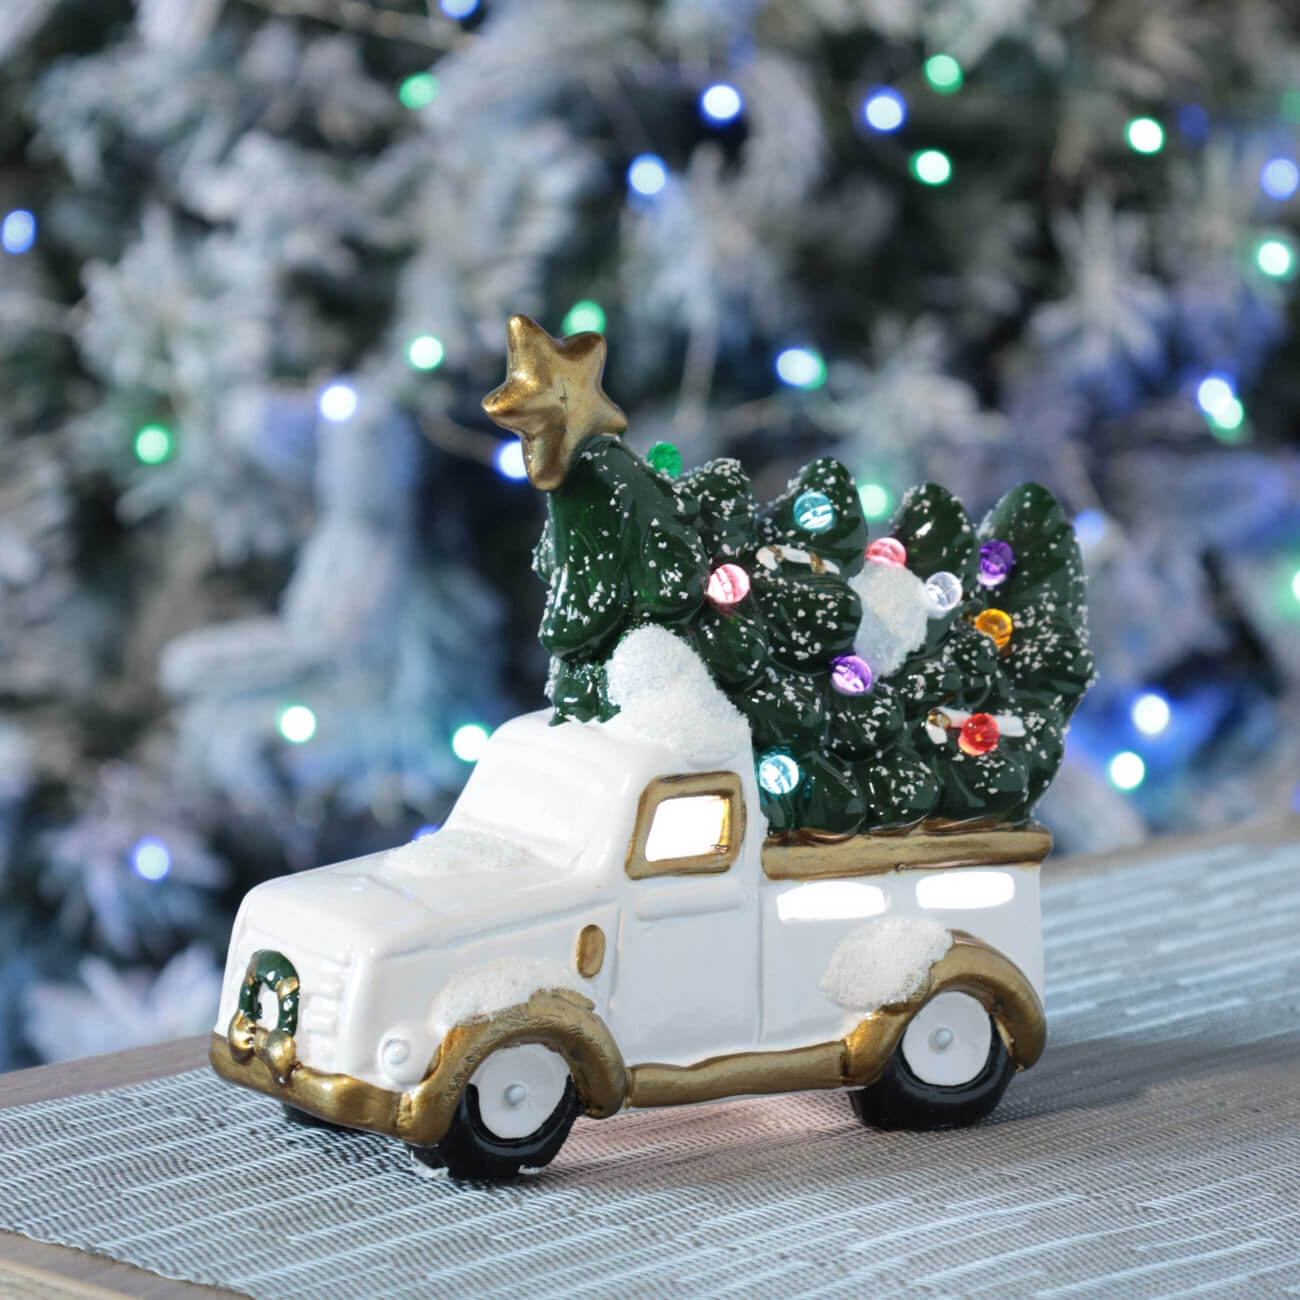 Статуэтка с подсветкой, 15 см, керамика, бело-золотистая, Машина с елкой, Christmas car